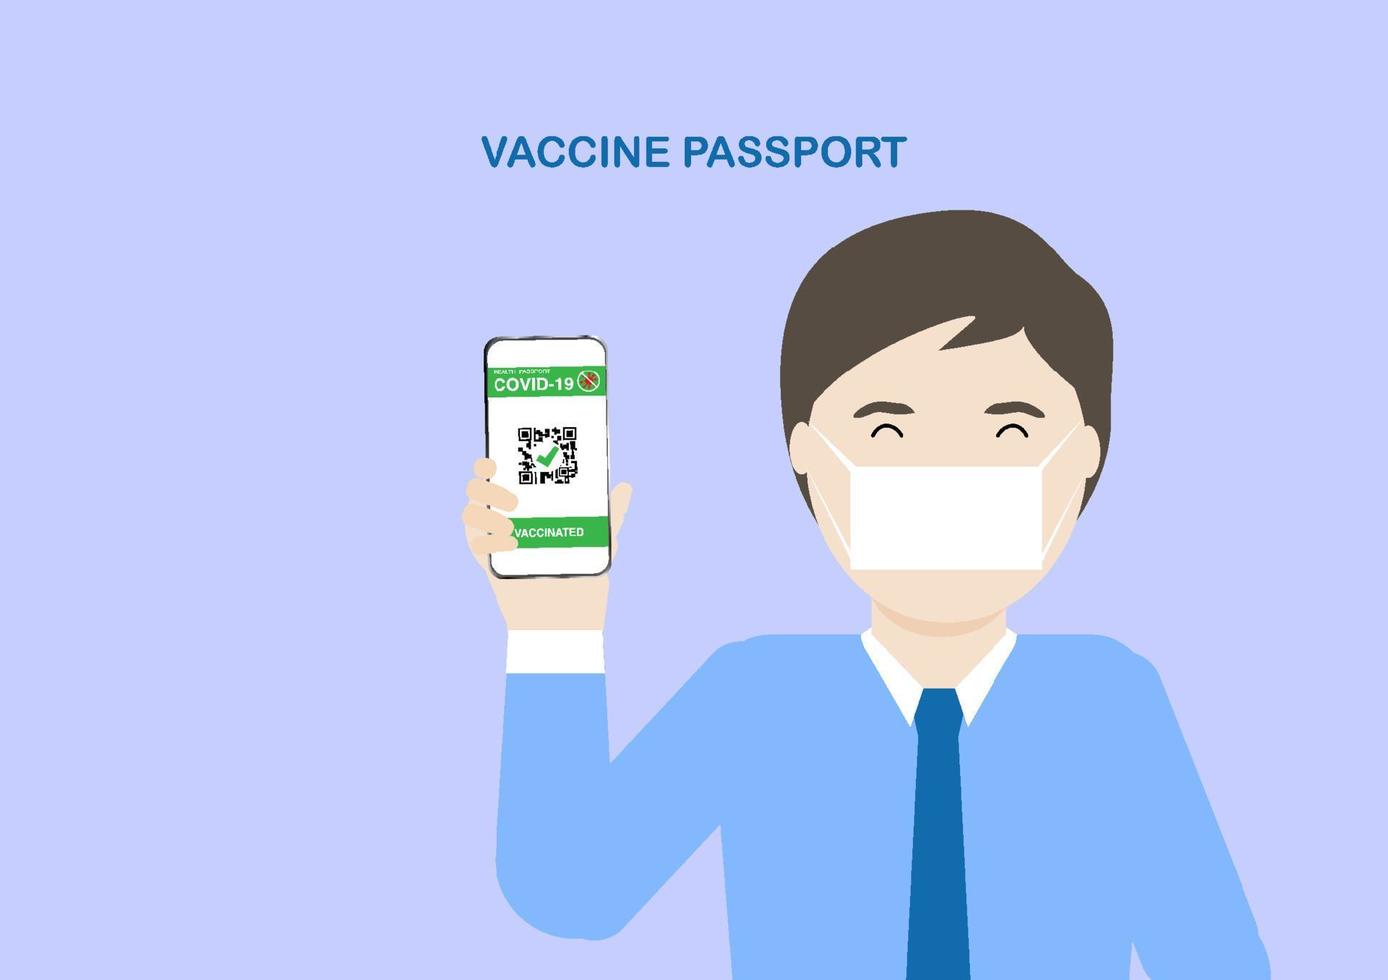 homme adulte montrant un passeport de vaccin après la vaccination contre le covid-19 vecteur